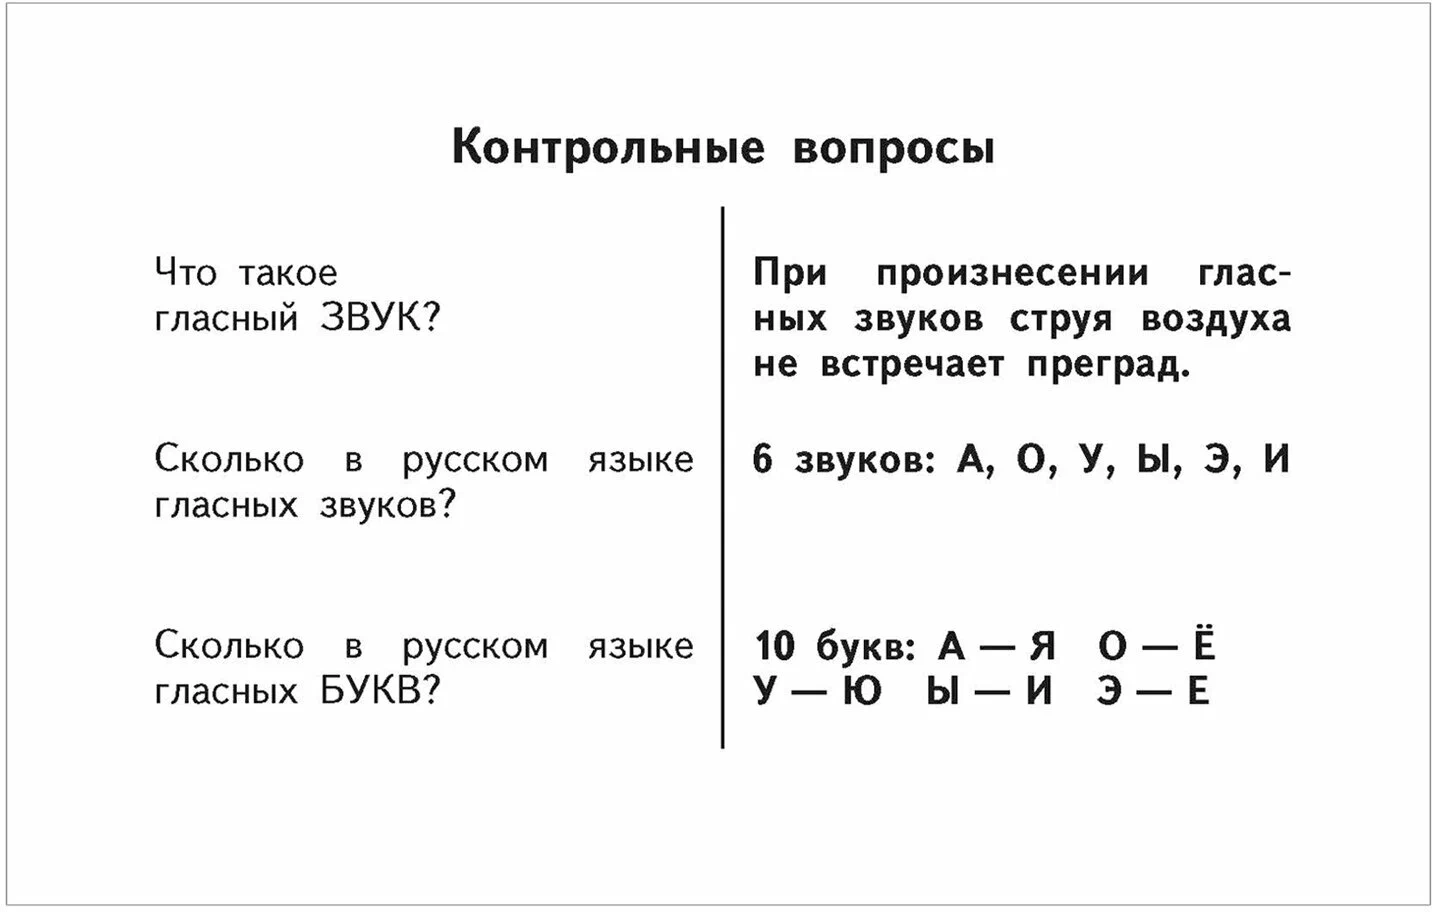 Таблицы по русскому языку для начальной школы. 1-4 классы